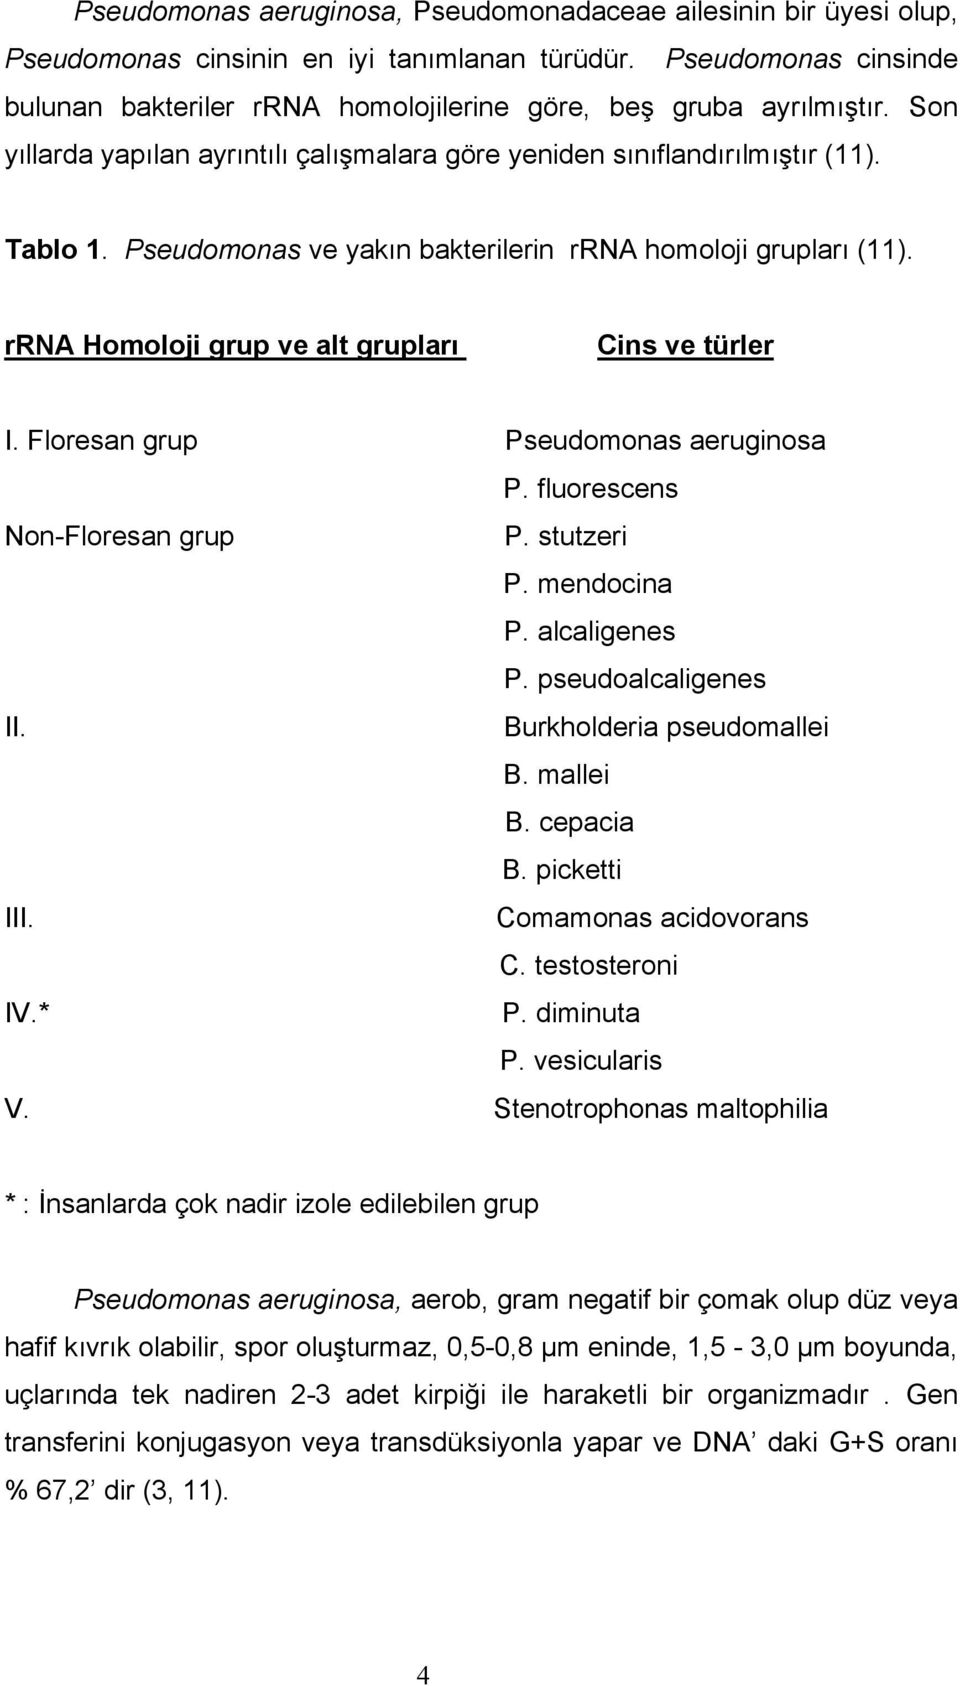 Pseudomonas ve yakın bakterilerin rrna homoloji grupları (11). rrna Homoloji grup ve alt grupları Cins ve türler Ι. Floresan grup Pseudomonas aeruginosa P. fluorescens Non-Floresan grup P. stutzeri P.